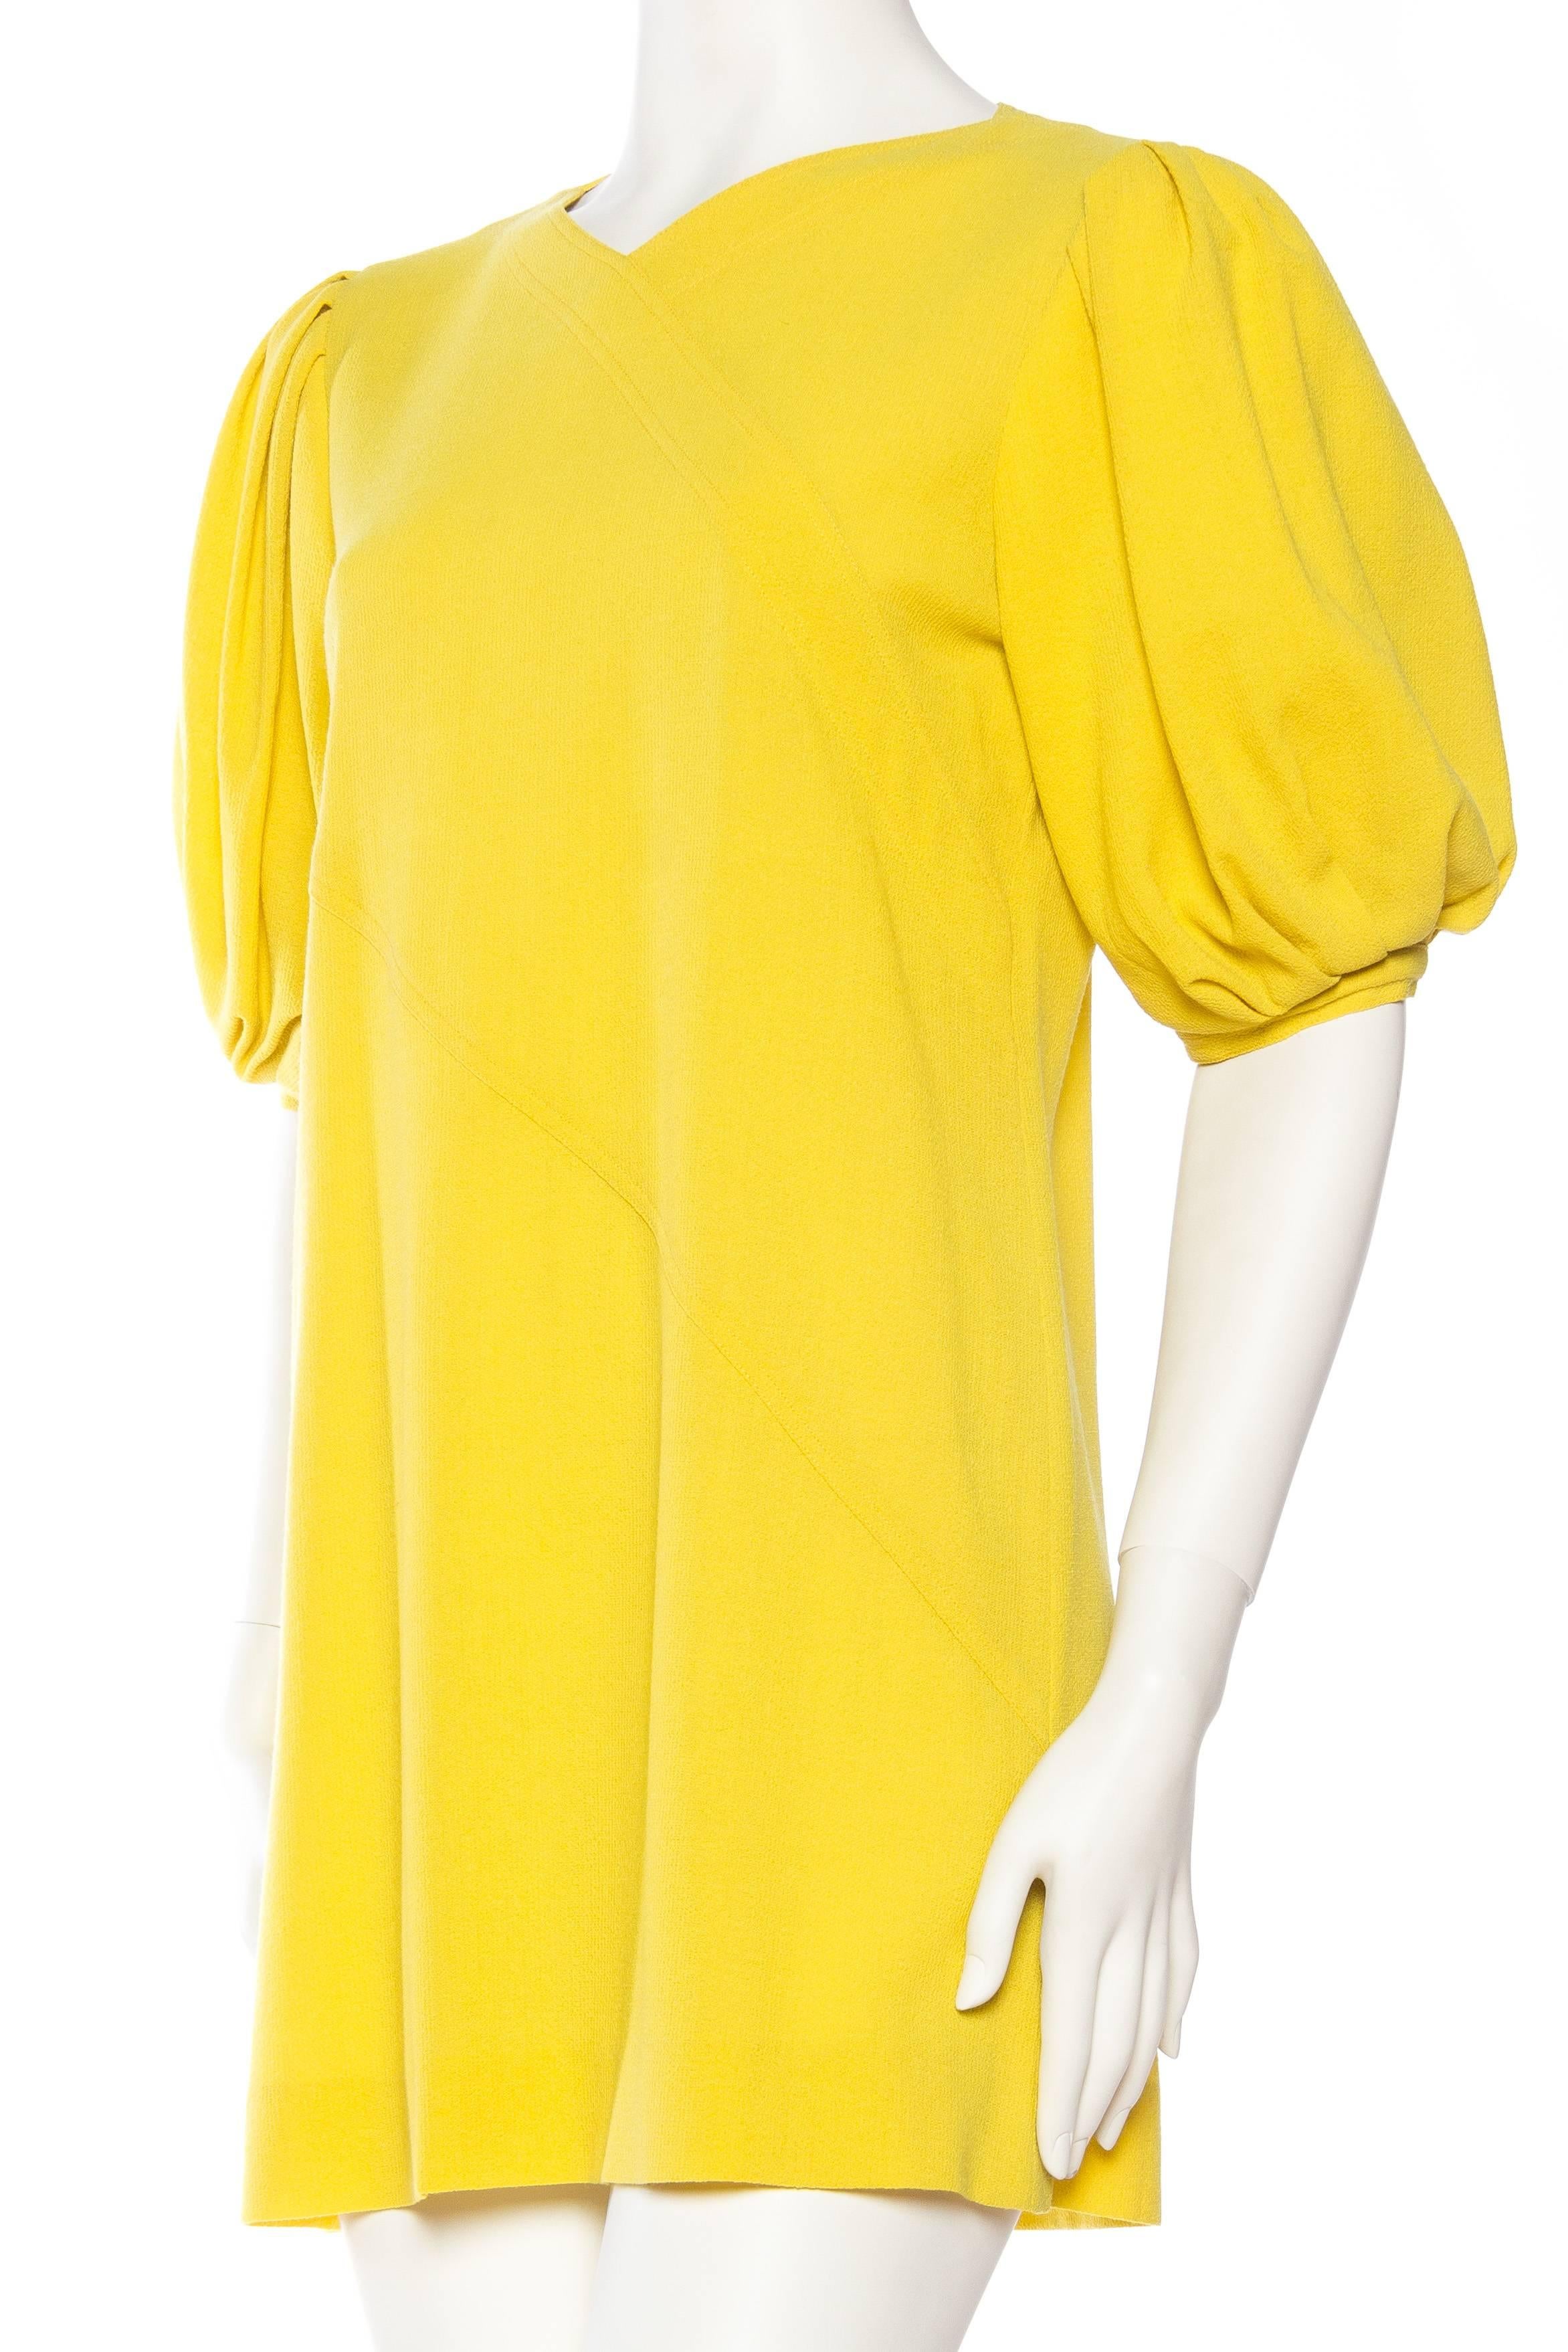 Jean Muir Lightweight Mod Yellow Dress 1